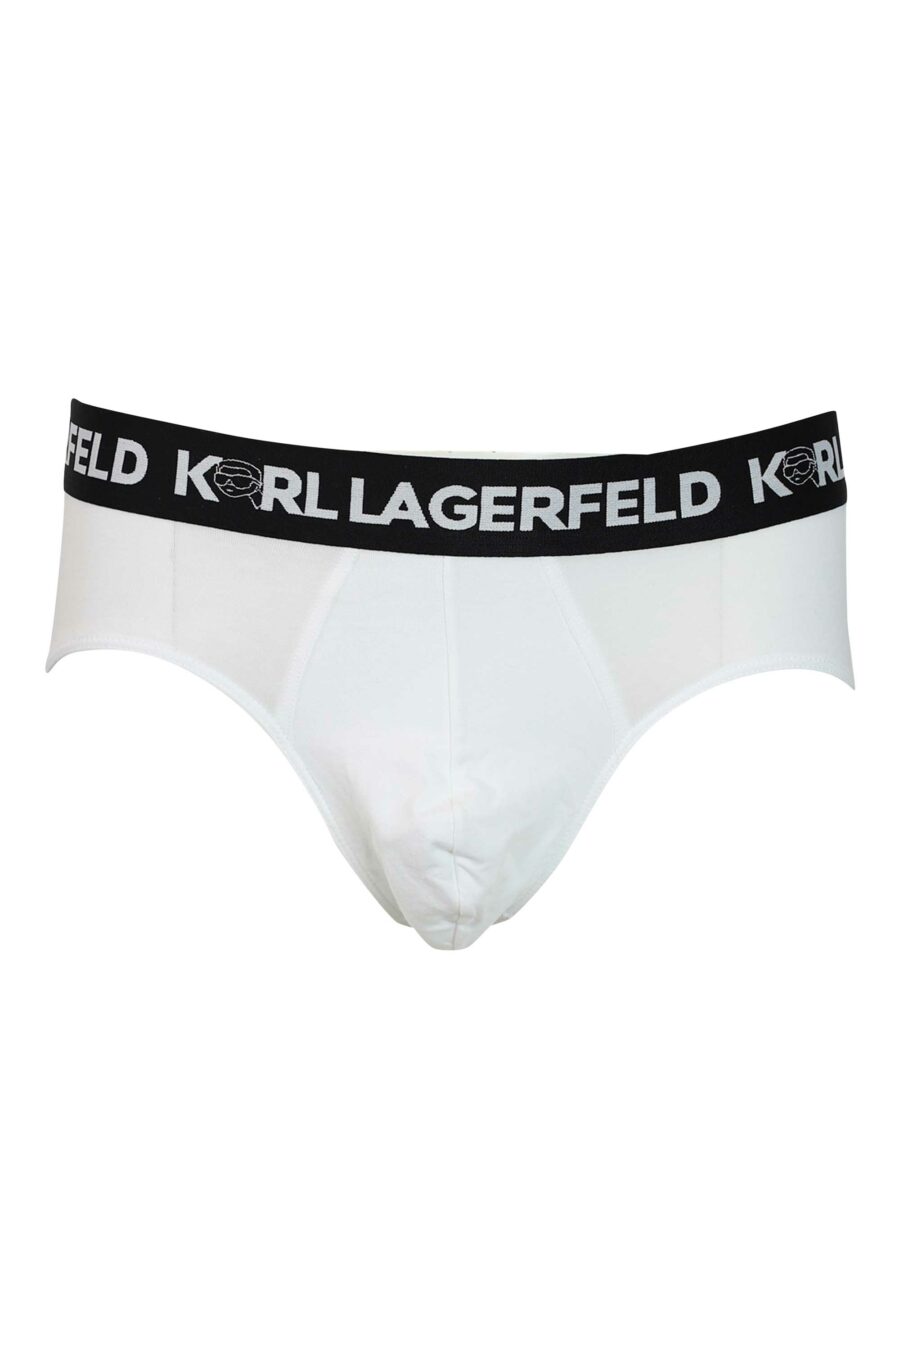 Dreierpack schwarzer und weißer Slips mit "karl"-Logo am Bund - 8720744054627